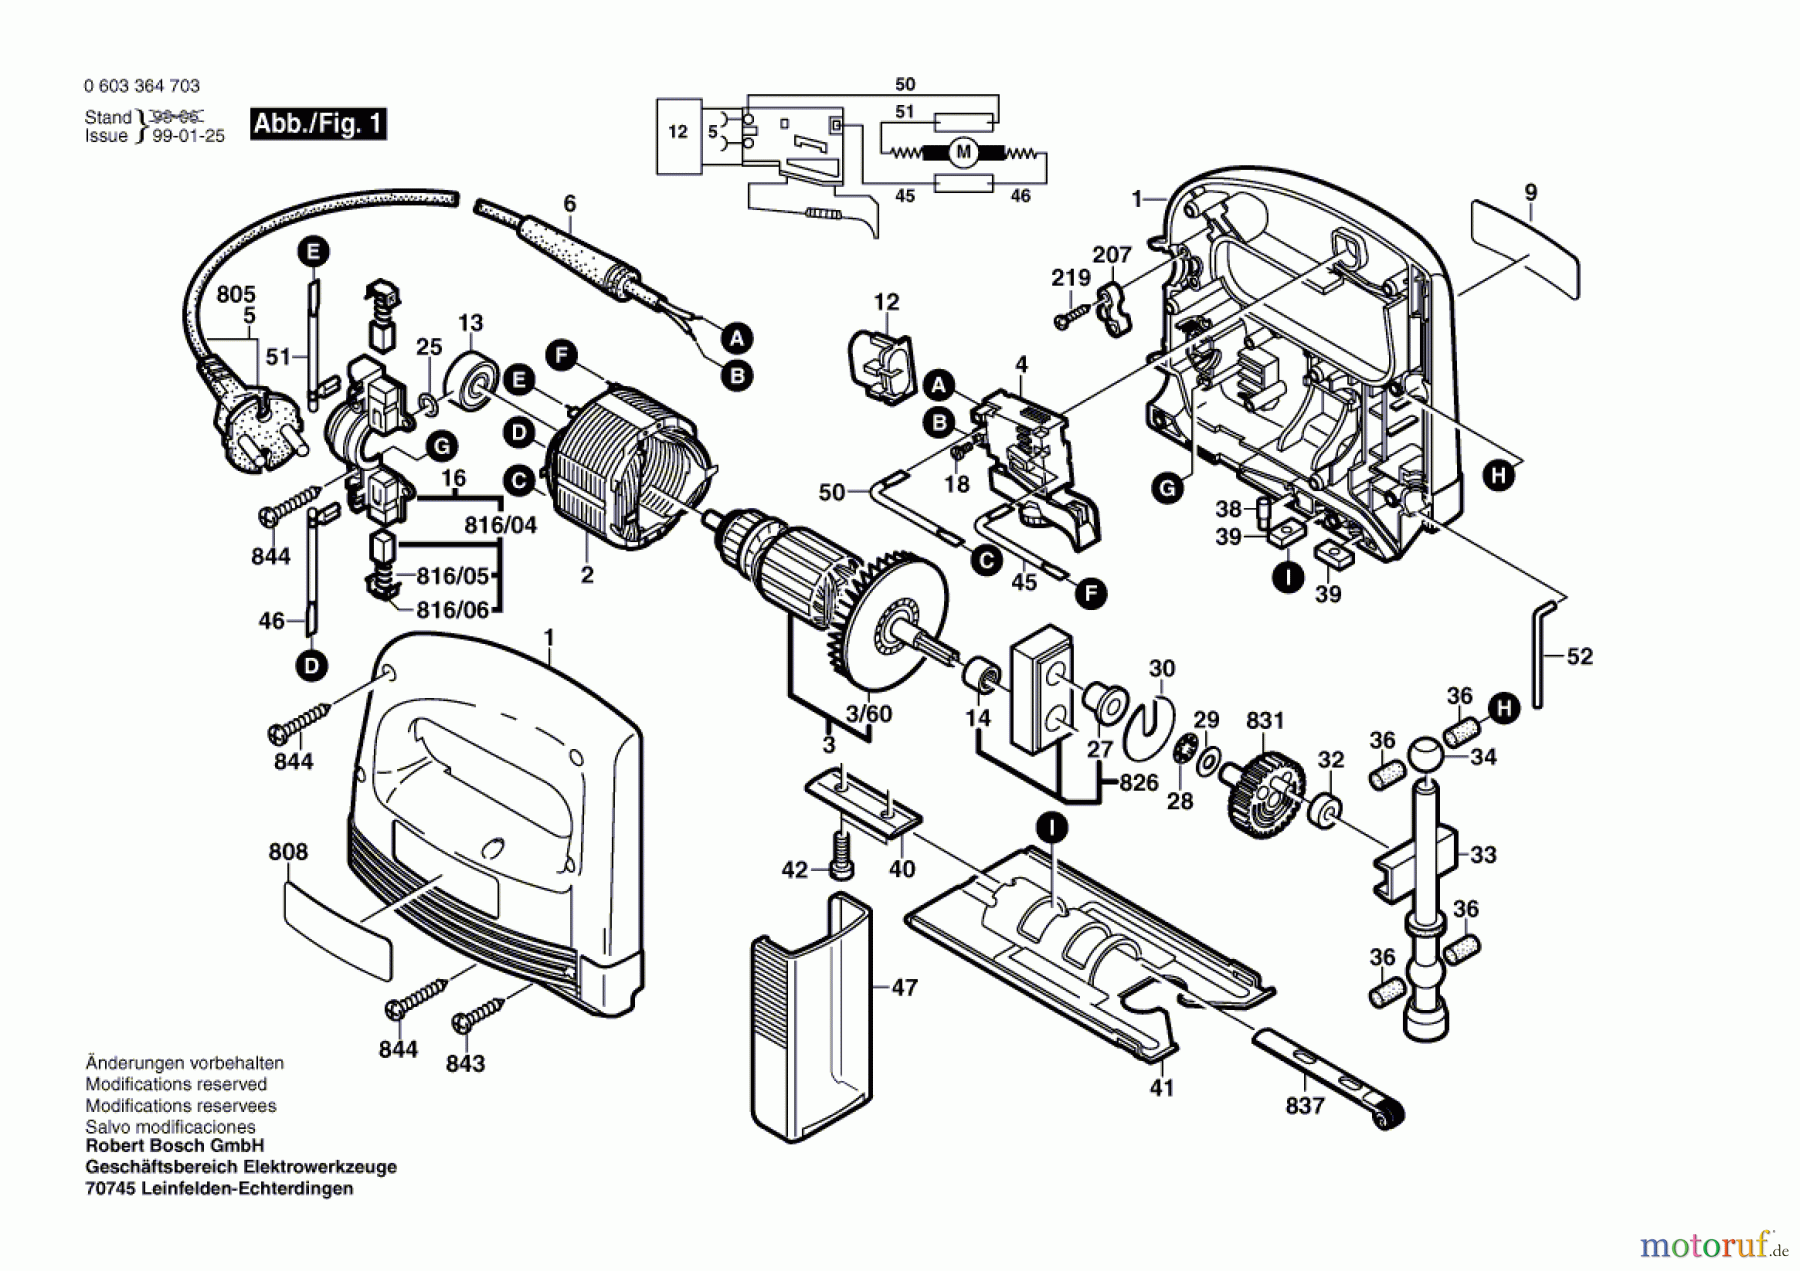  Bosch Werkzeug Stichsäge PST 550 AE Seite 1